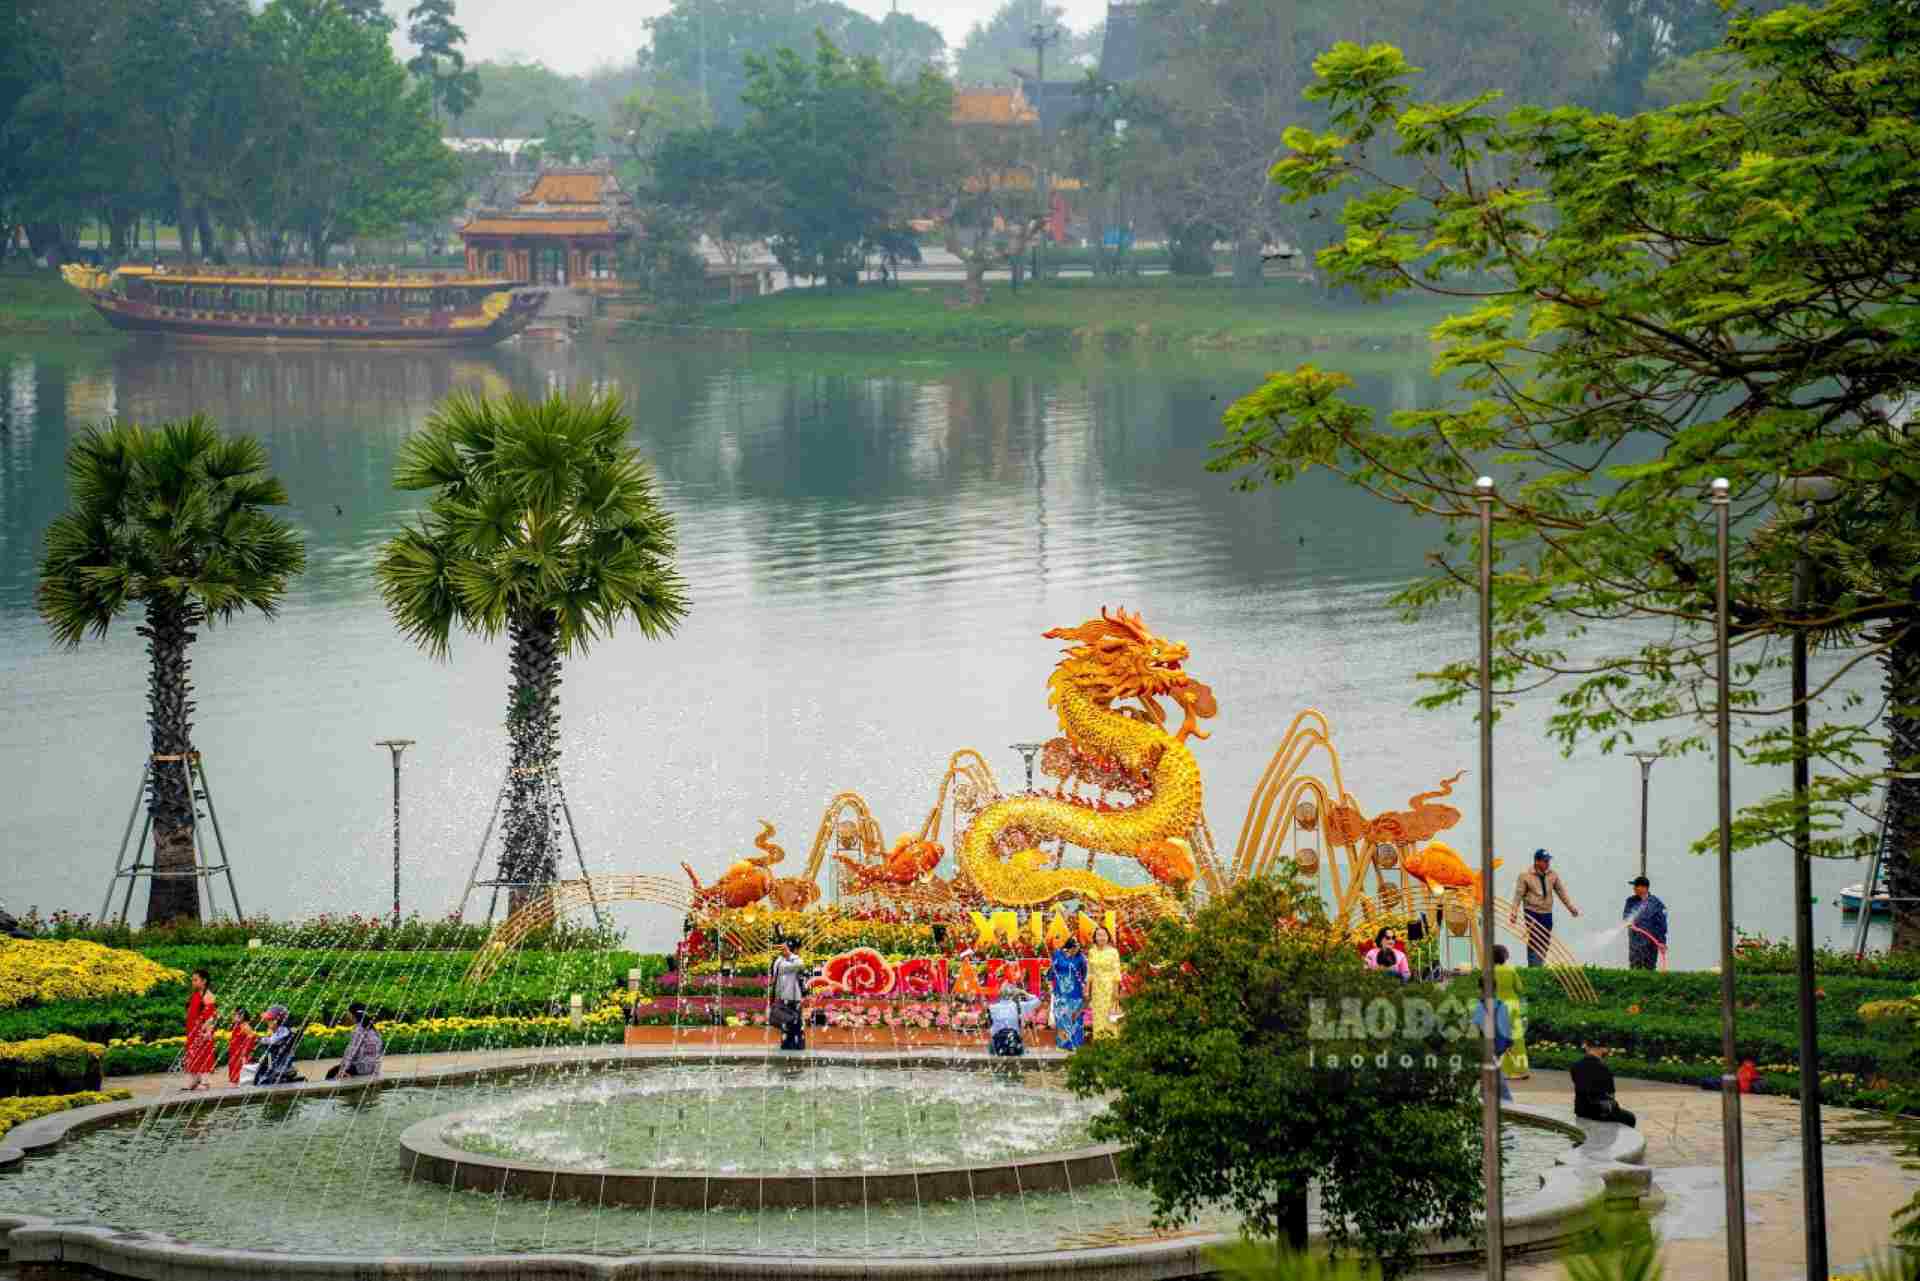 Hình ảnh linh vật rồng còn lại đặt phía trước UBND tỉnh Thừa Thiên Huế.